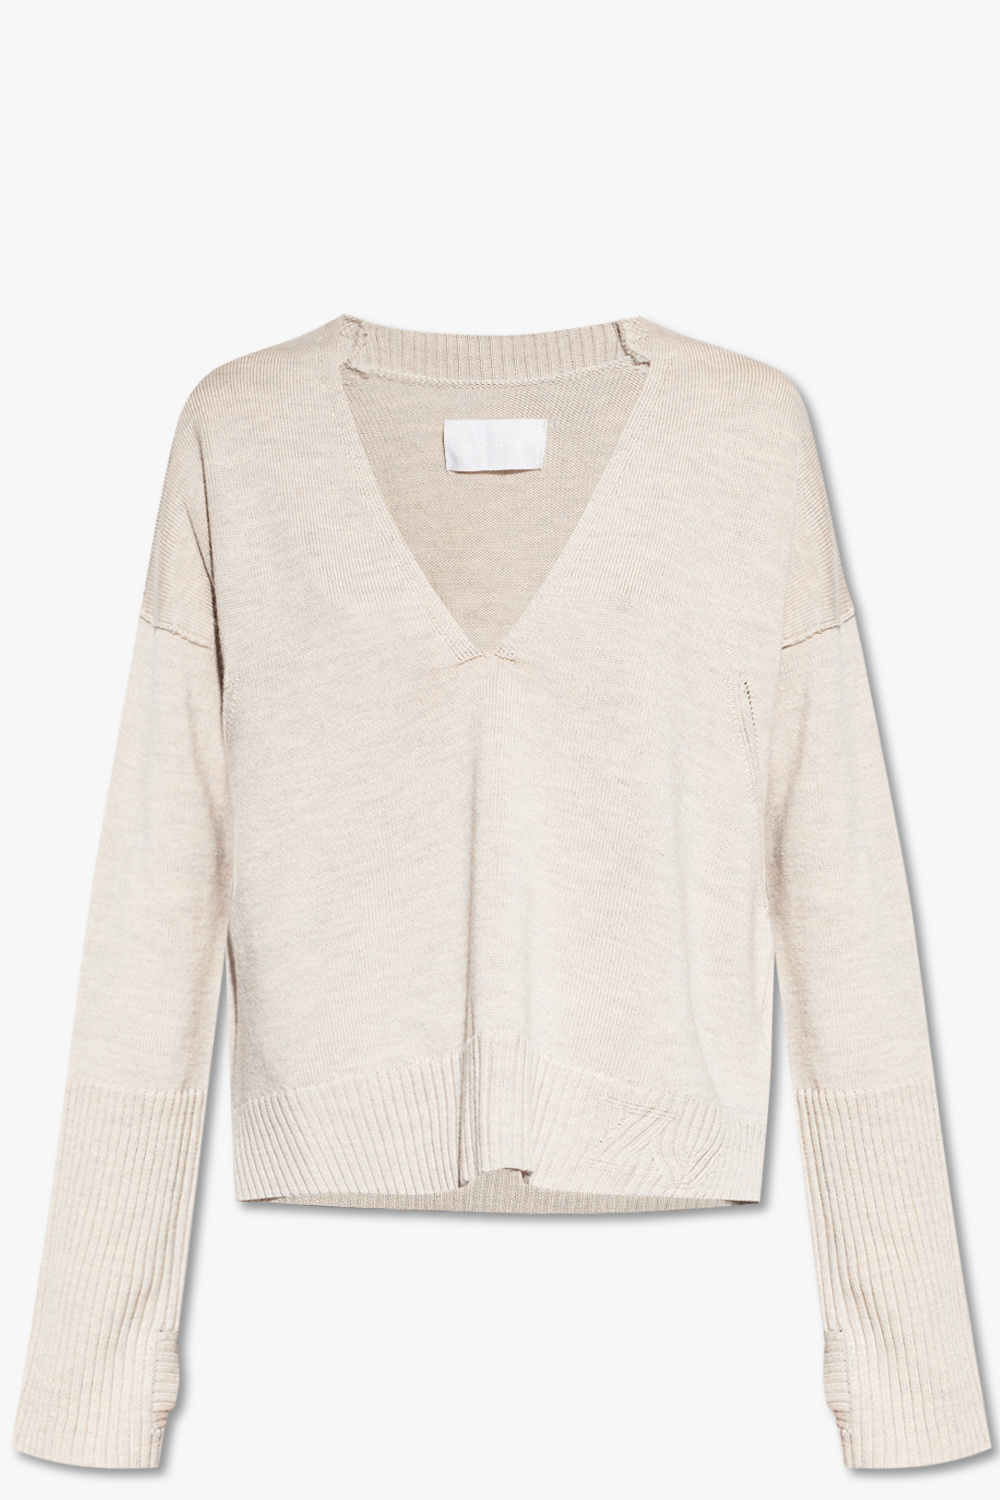 Zadig & Voltaire ‘Danna’ wool sweater